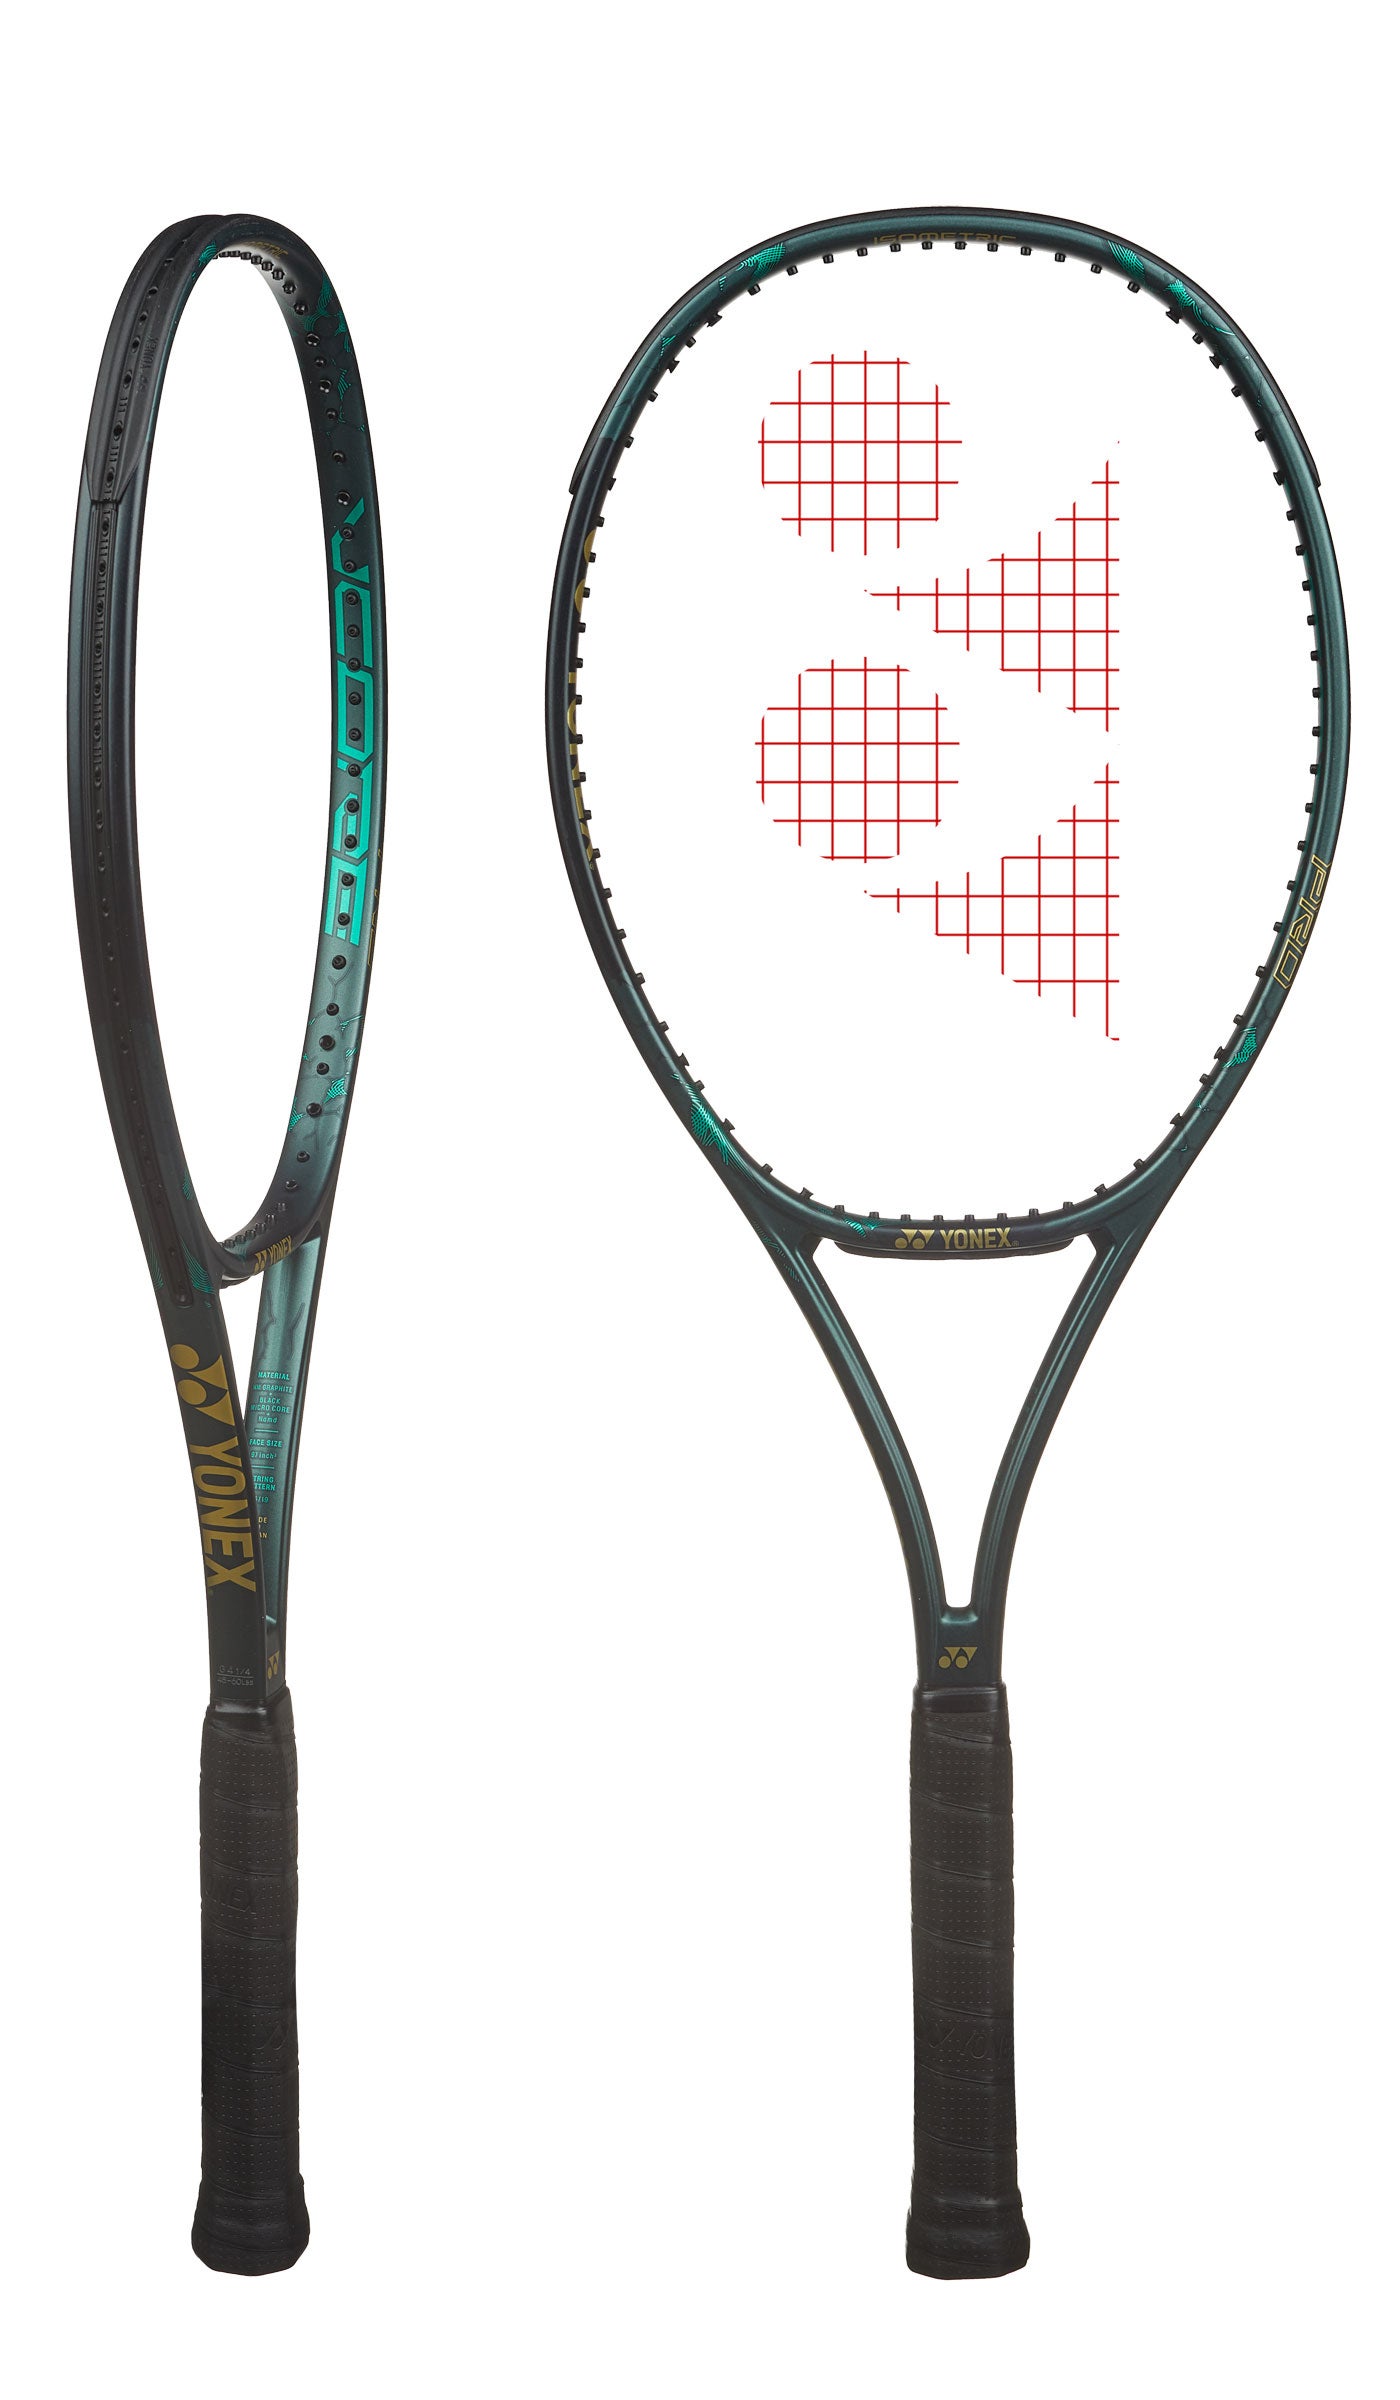 Details about   Yonex Tennis Racquet Vcore Pro 97 310g Matte Green 2019 New UNSTRUNG, G4 